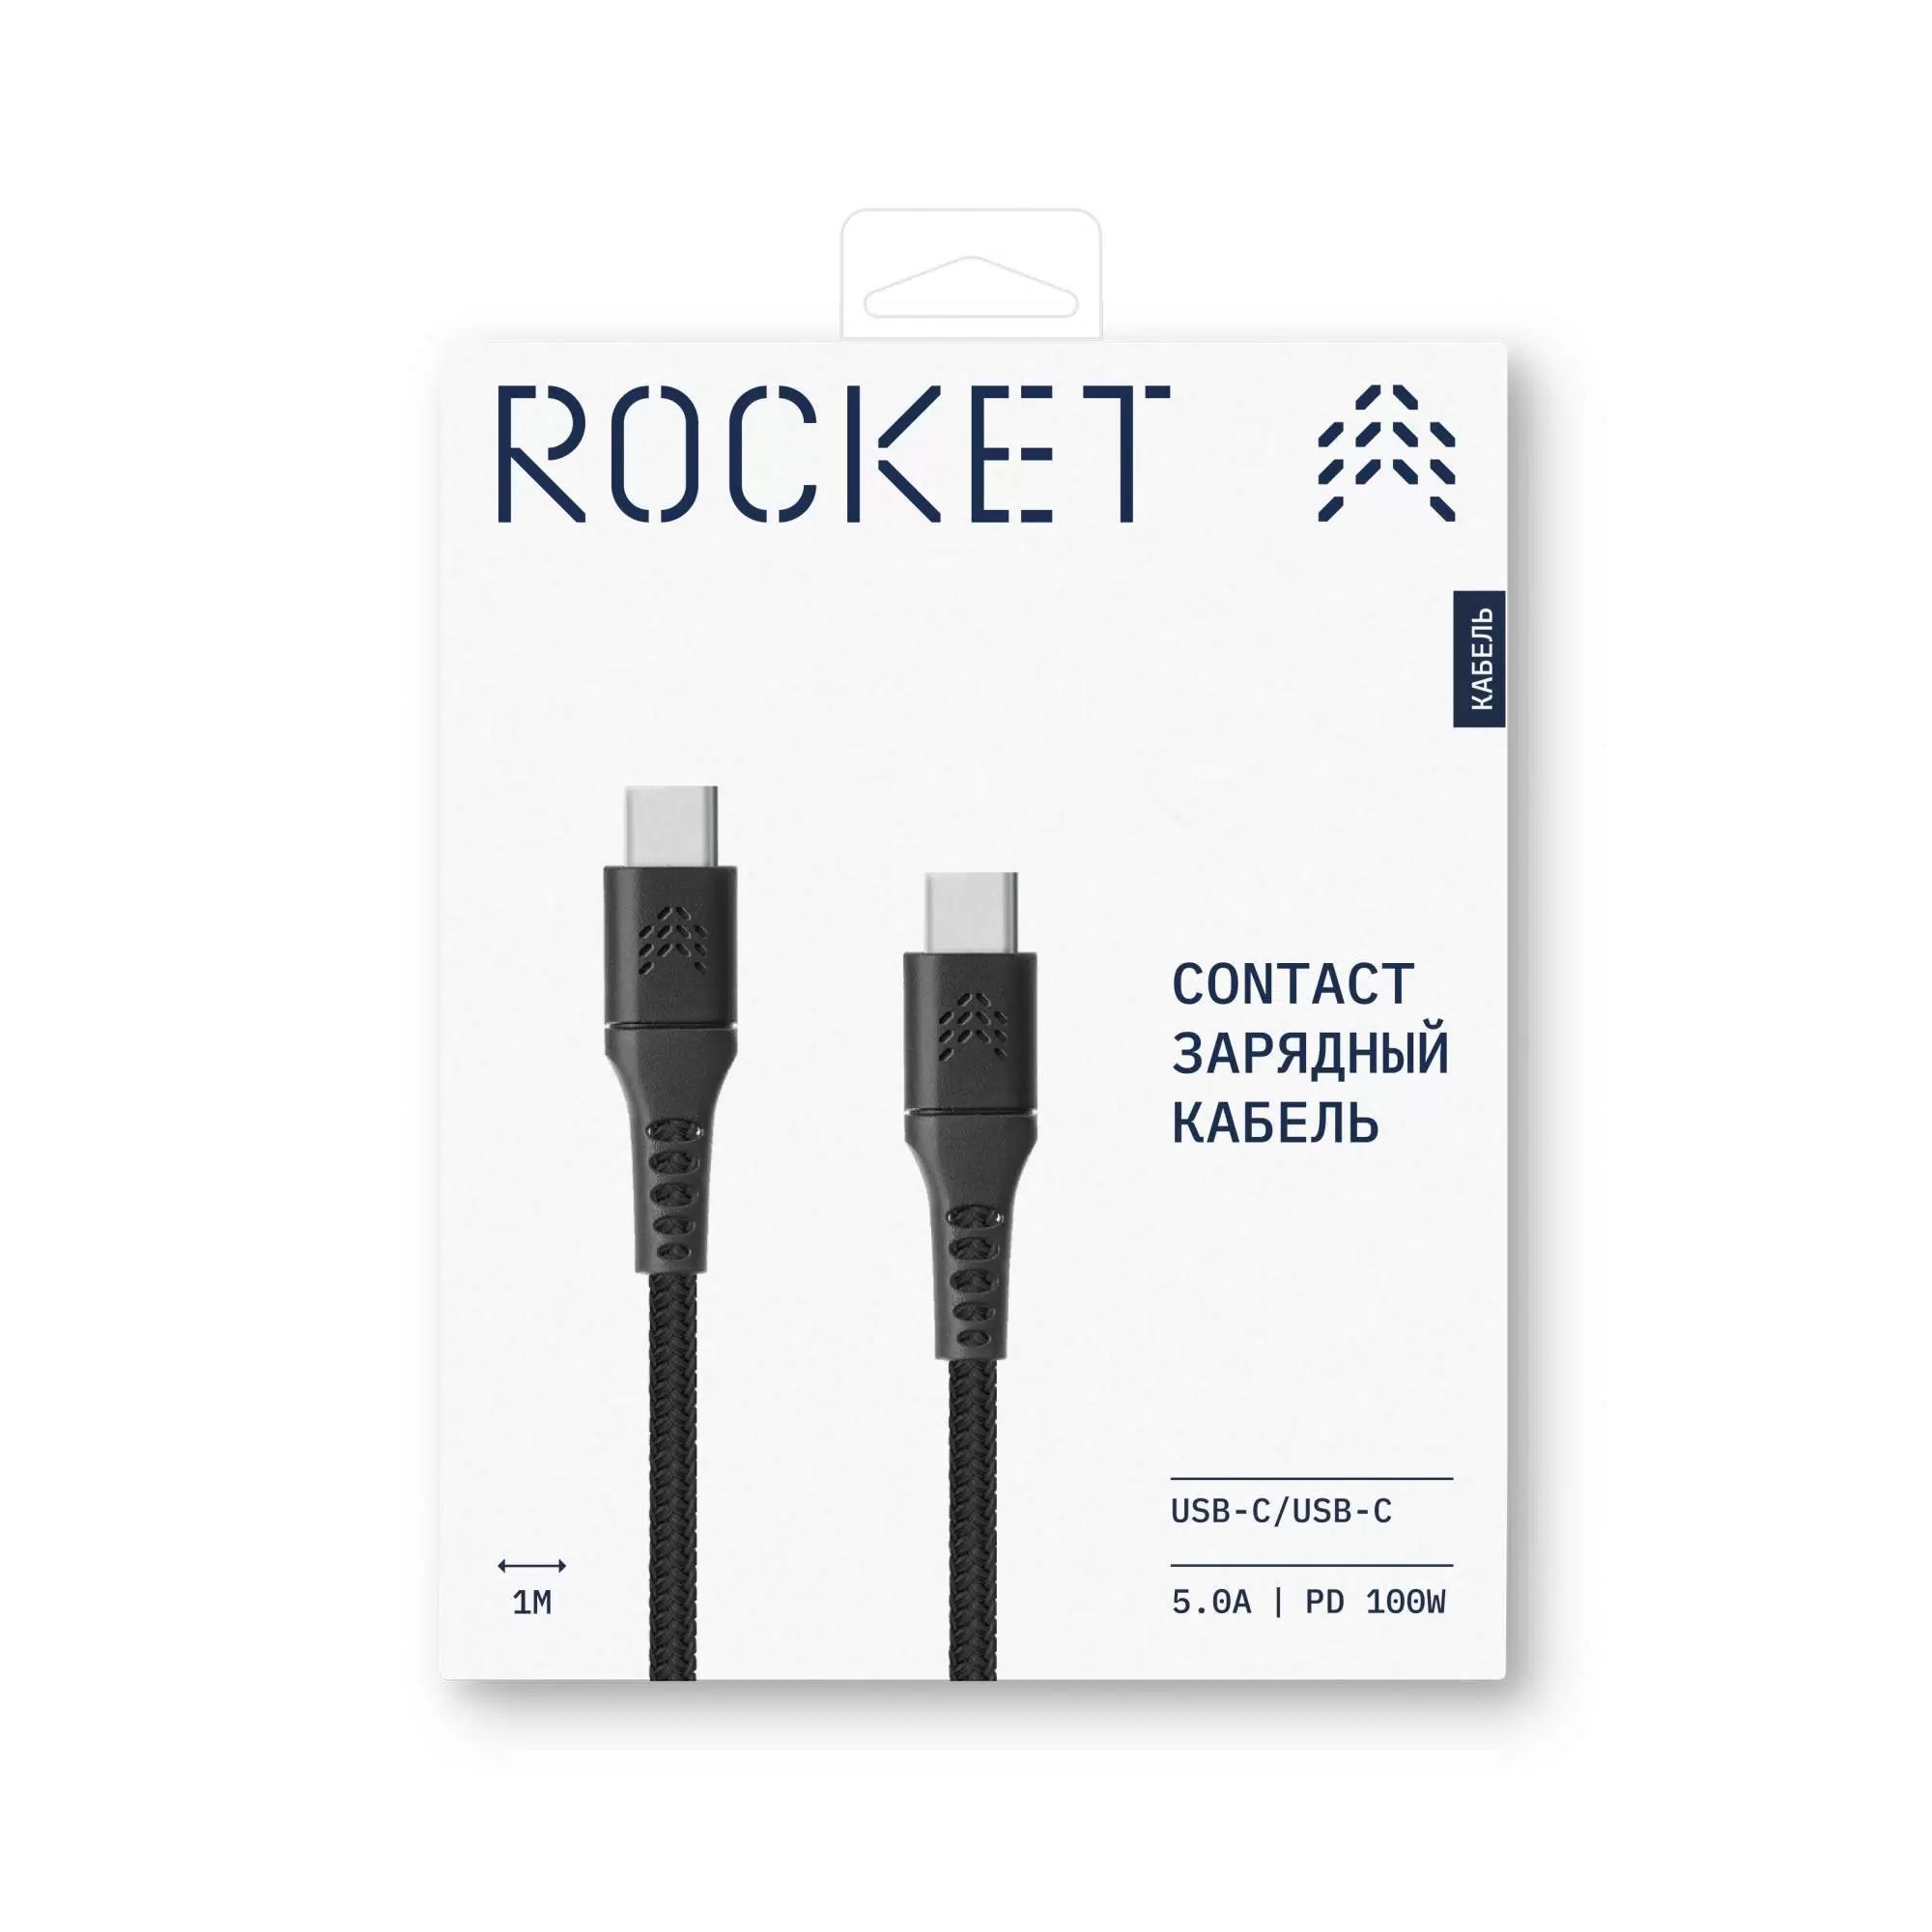 Зарядный кабель ROCKET Contact, USB-C/USB-C, 100W, 5.0A, 1м, черный